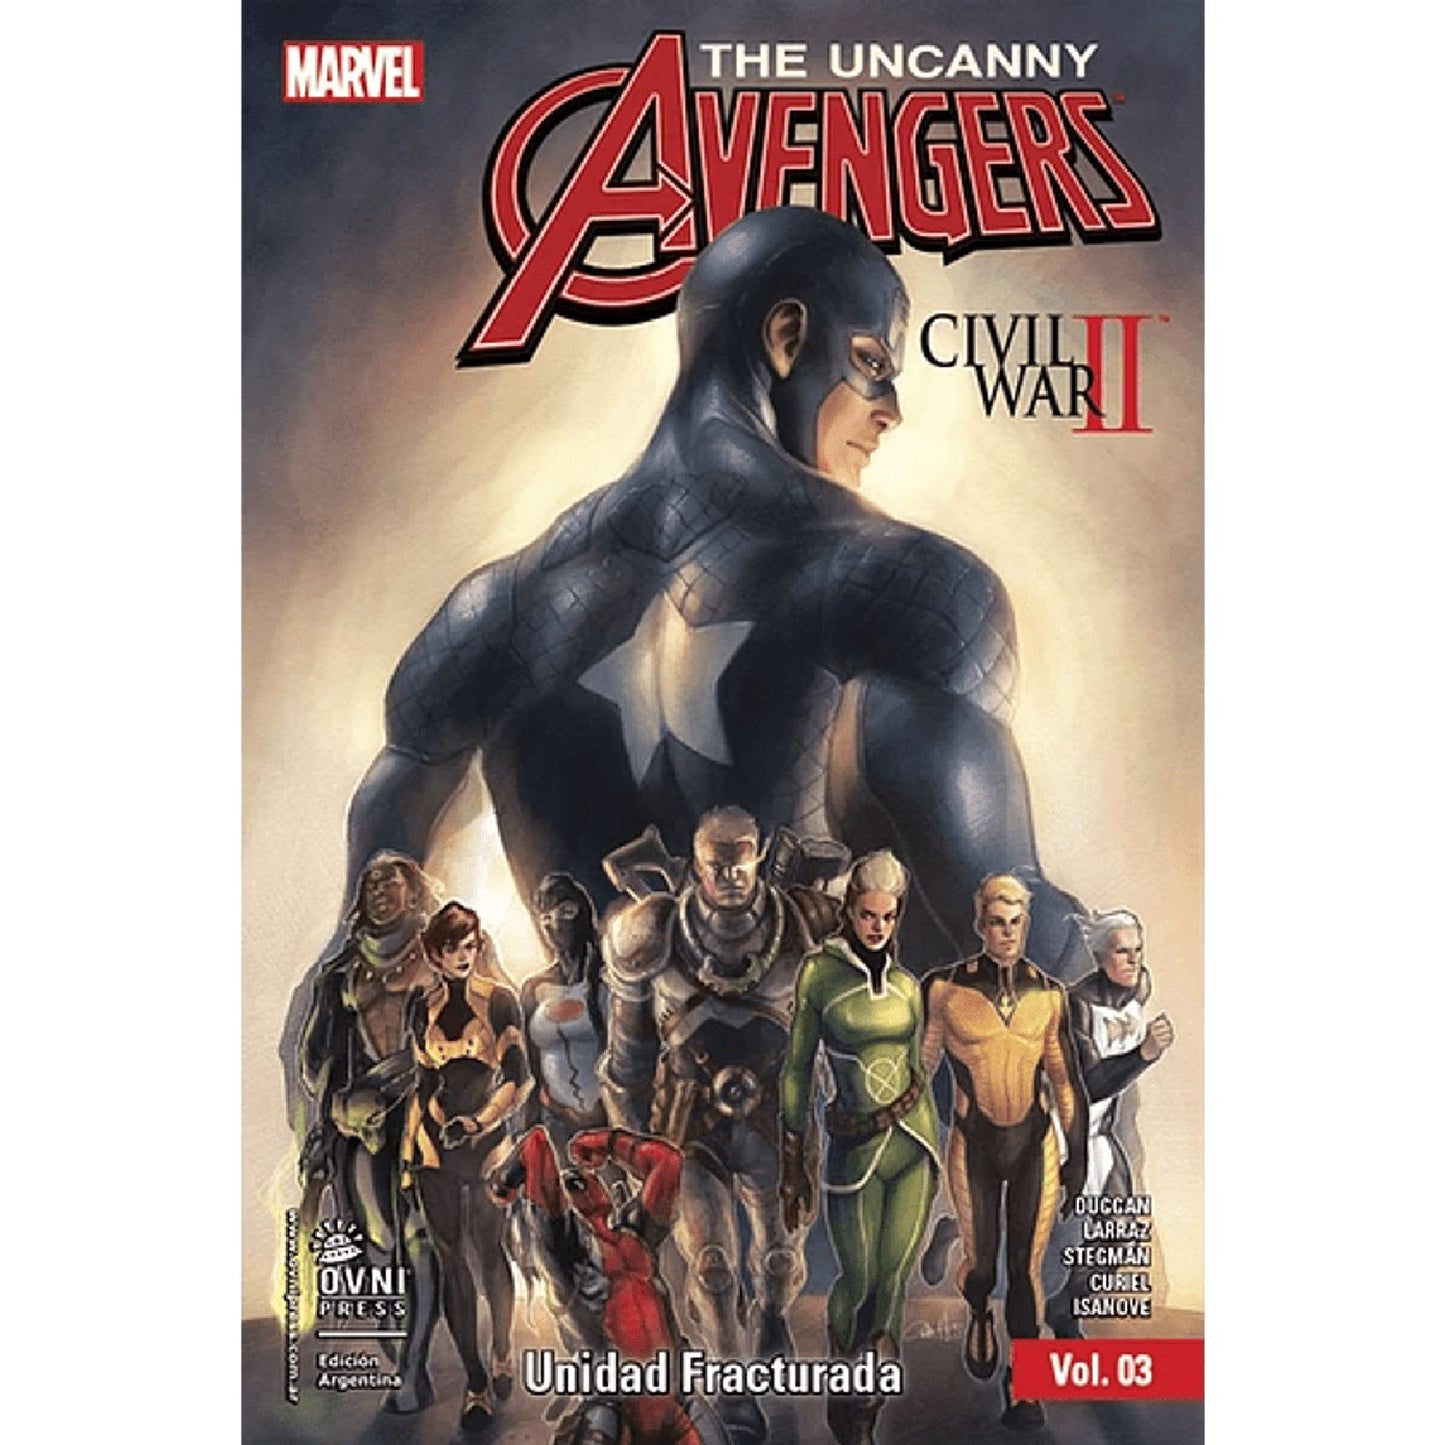 The Uncanny Avengers #3 Unidad Fracturada OVNI Press ENcuadrocomics